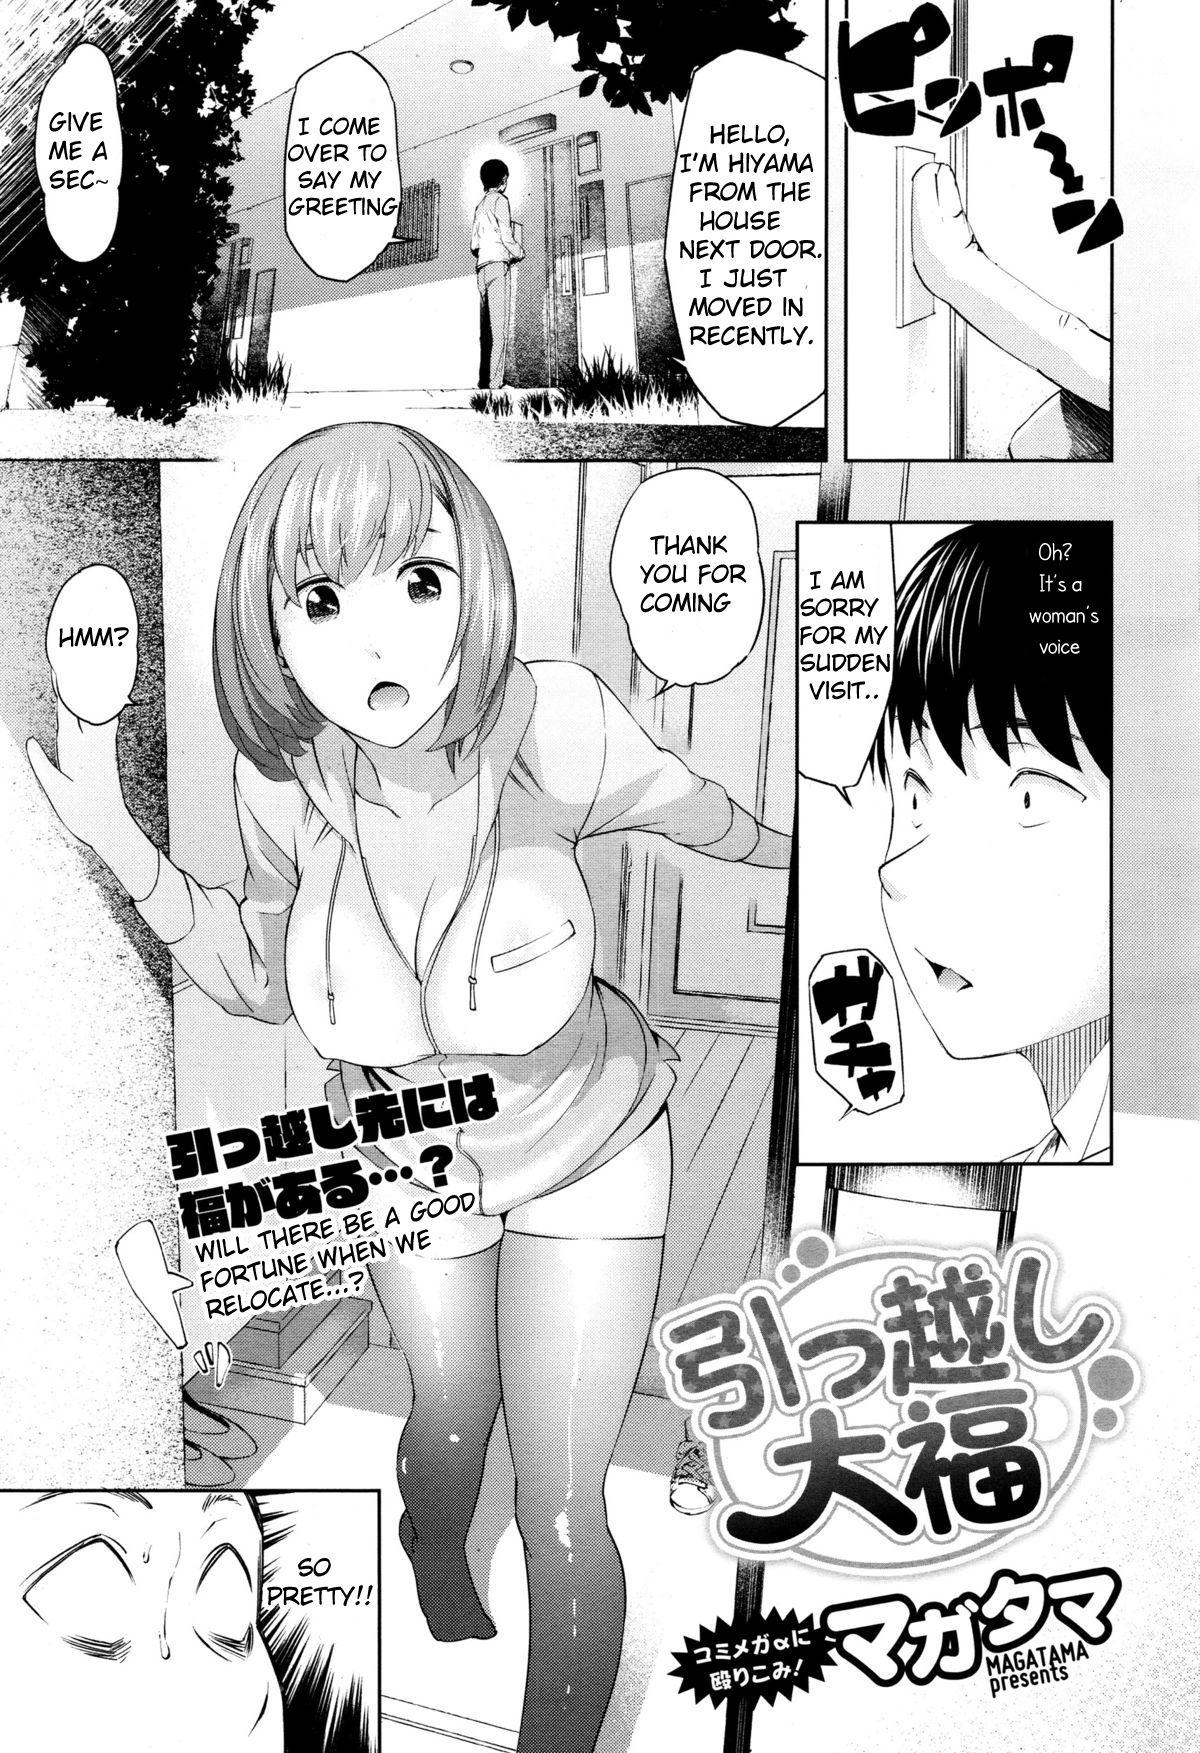 Reverse Hikkoshi daifuku Blow Jobs Porn - Page 1